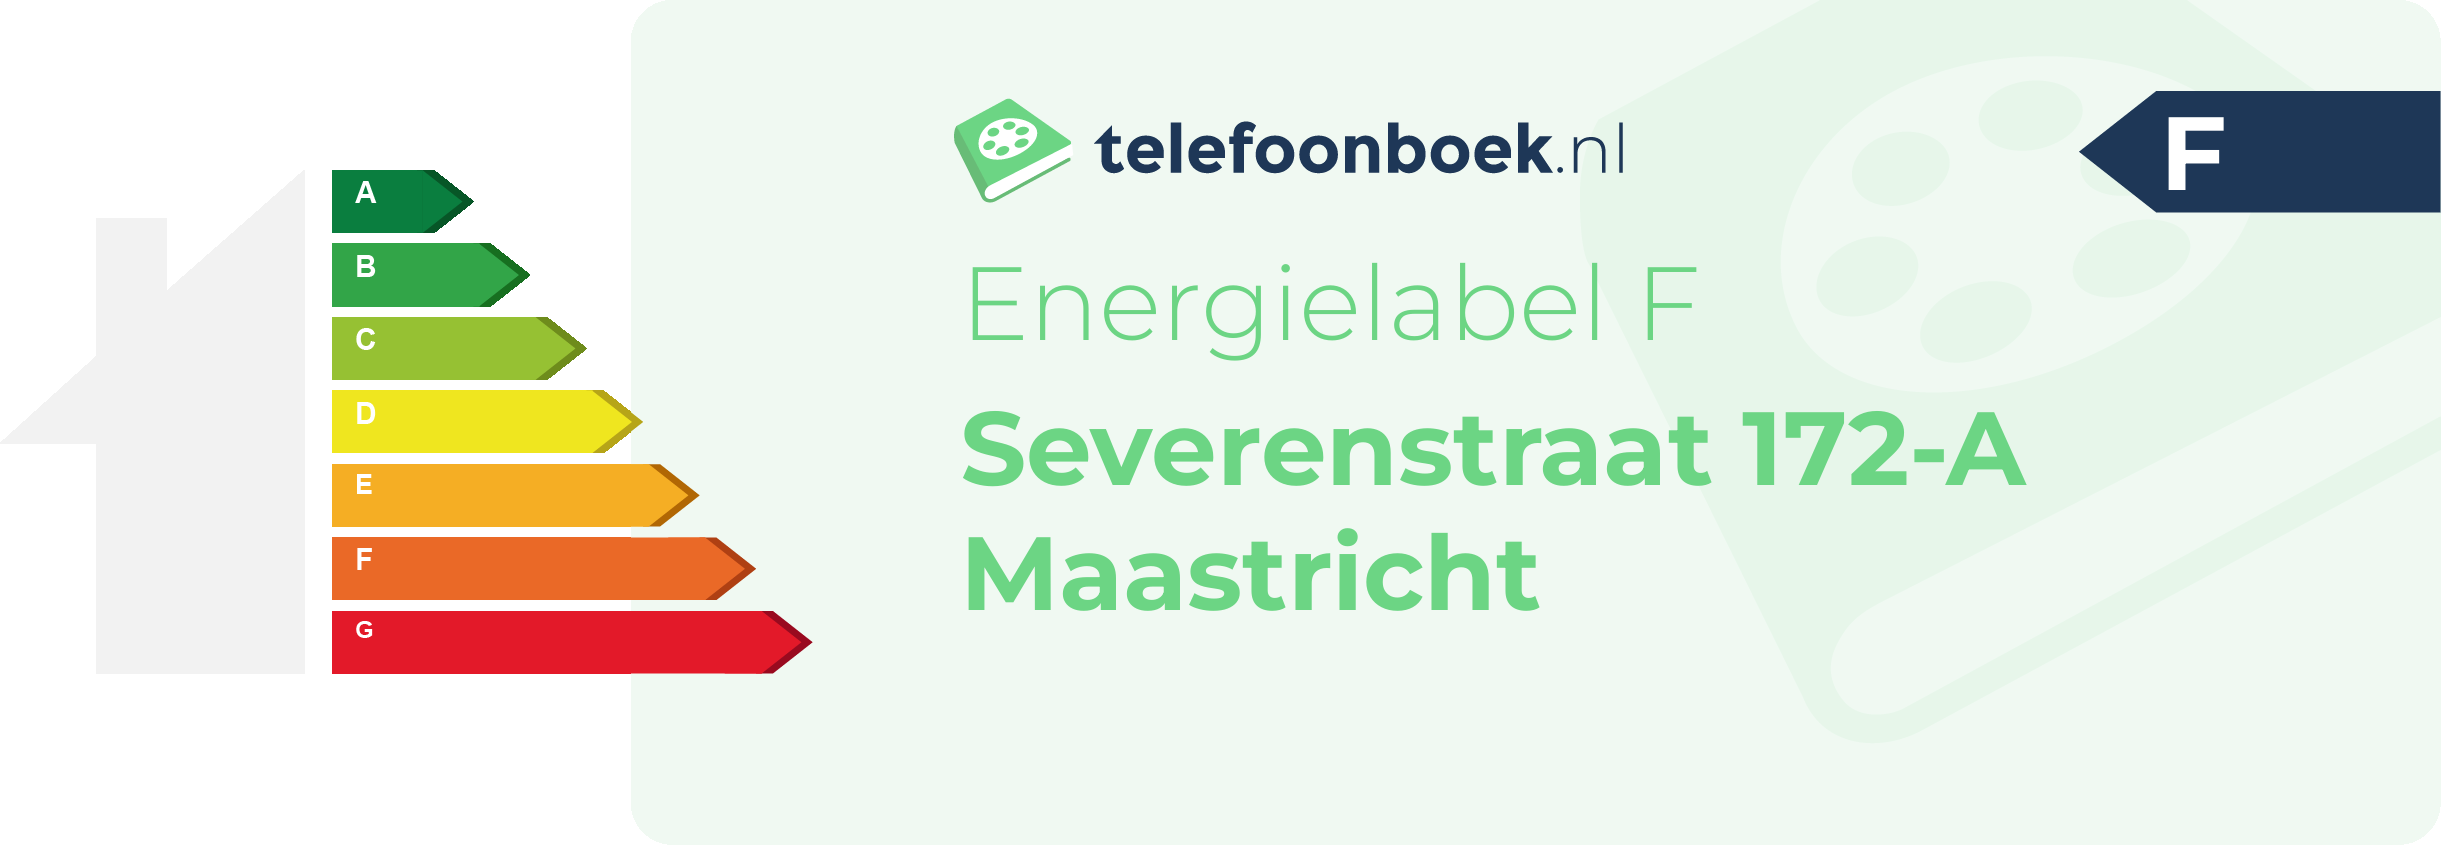 Energielabel Severenstraat 172-A Maastricht